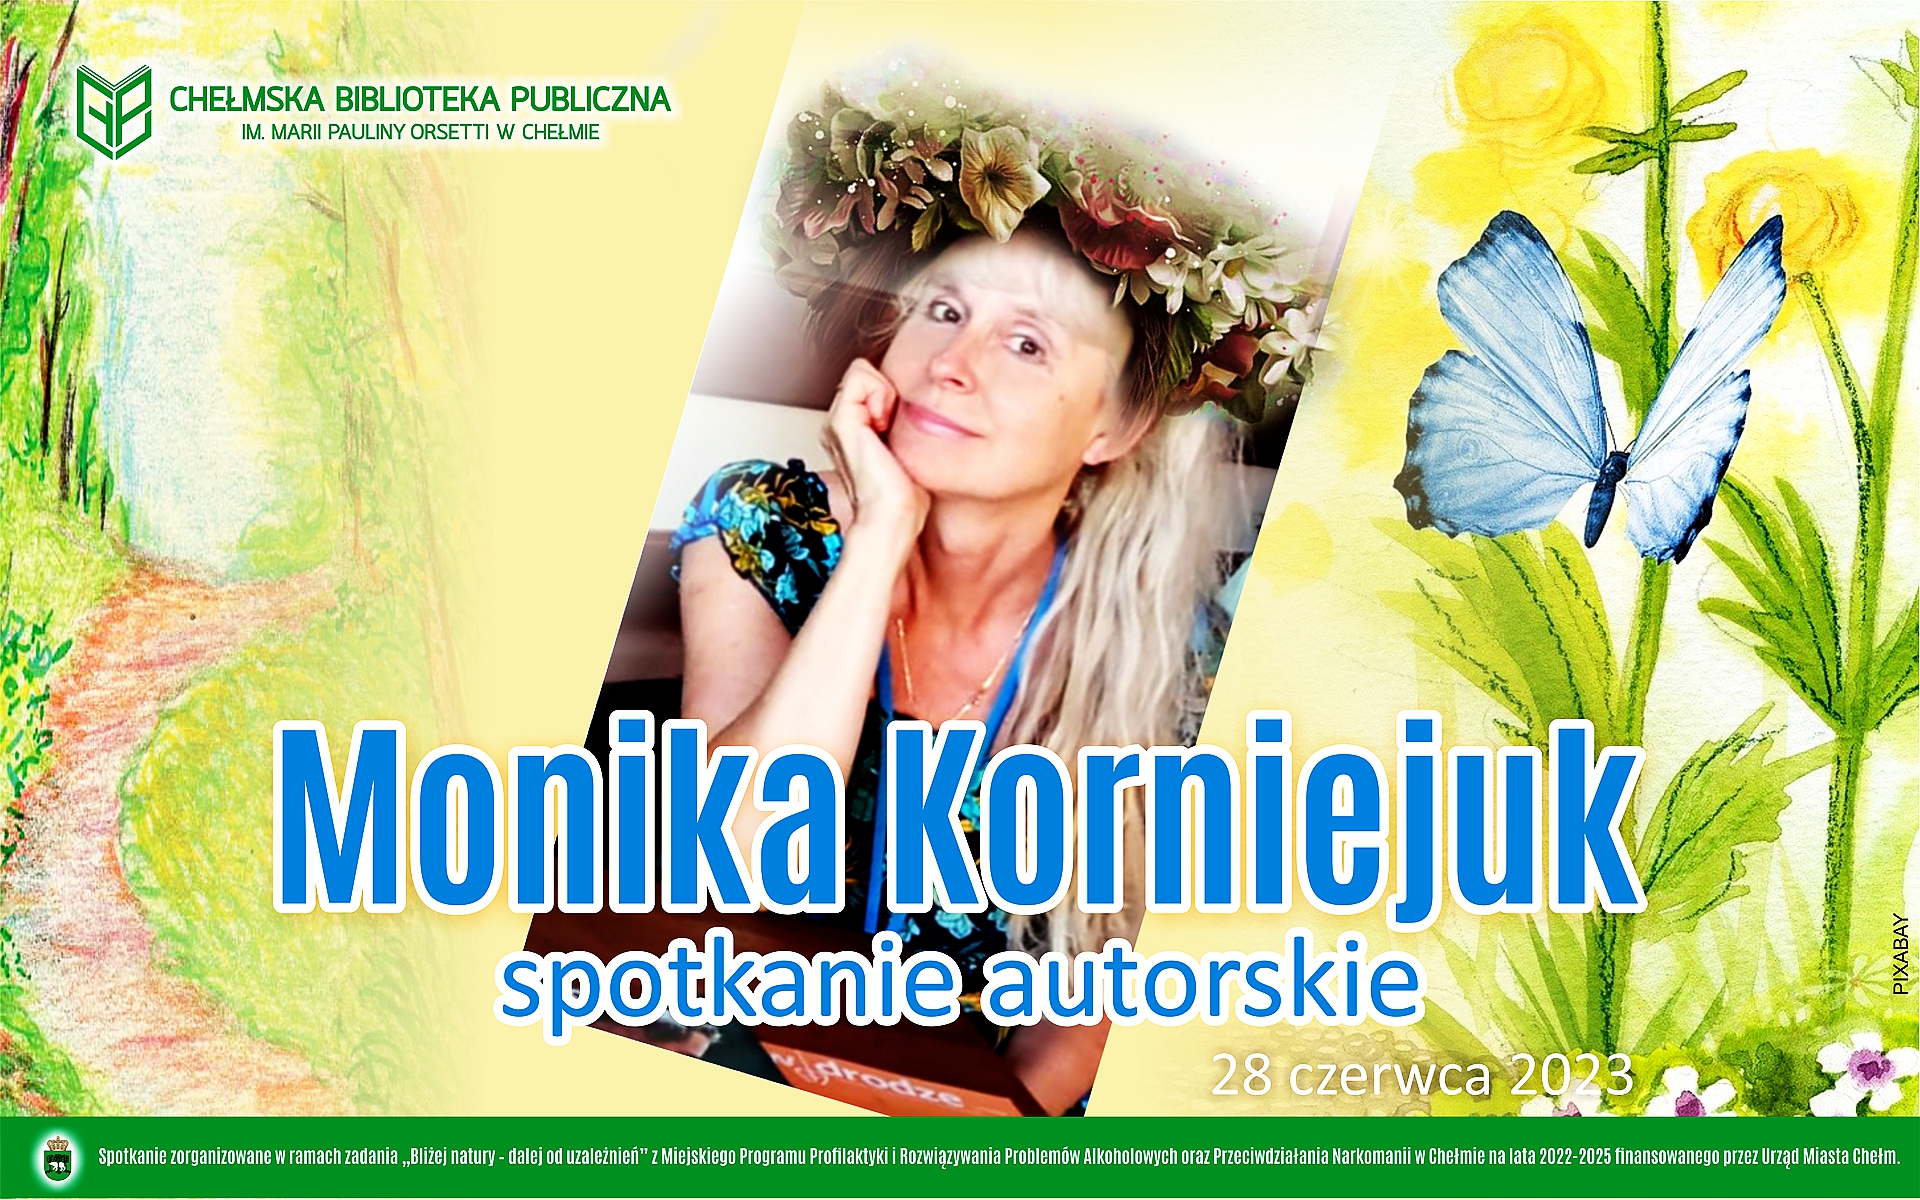 Zaproszenie na spotkanie autorskie z pisarką dla dzieci Moniką Korniejuk . Plakat w centrum wizerunek pisarki, wokół pastelowe kwiaty